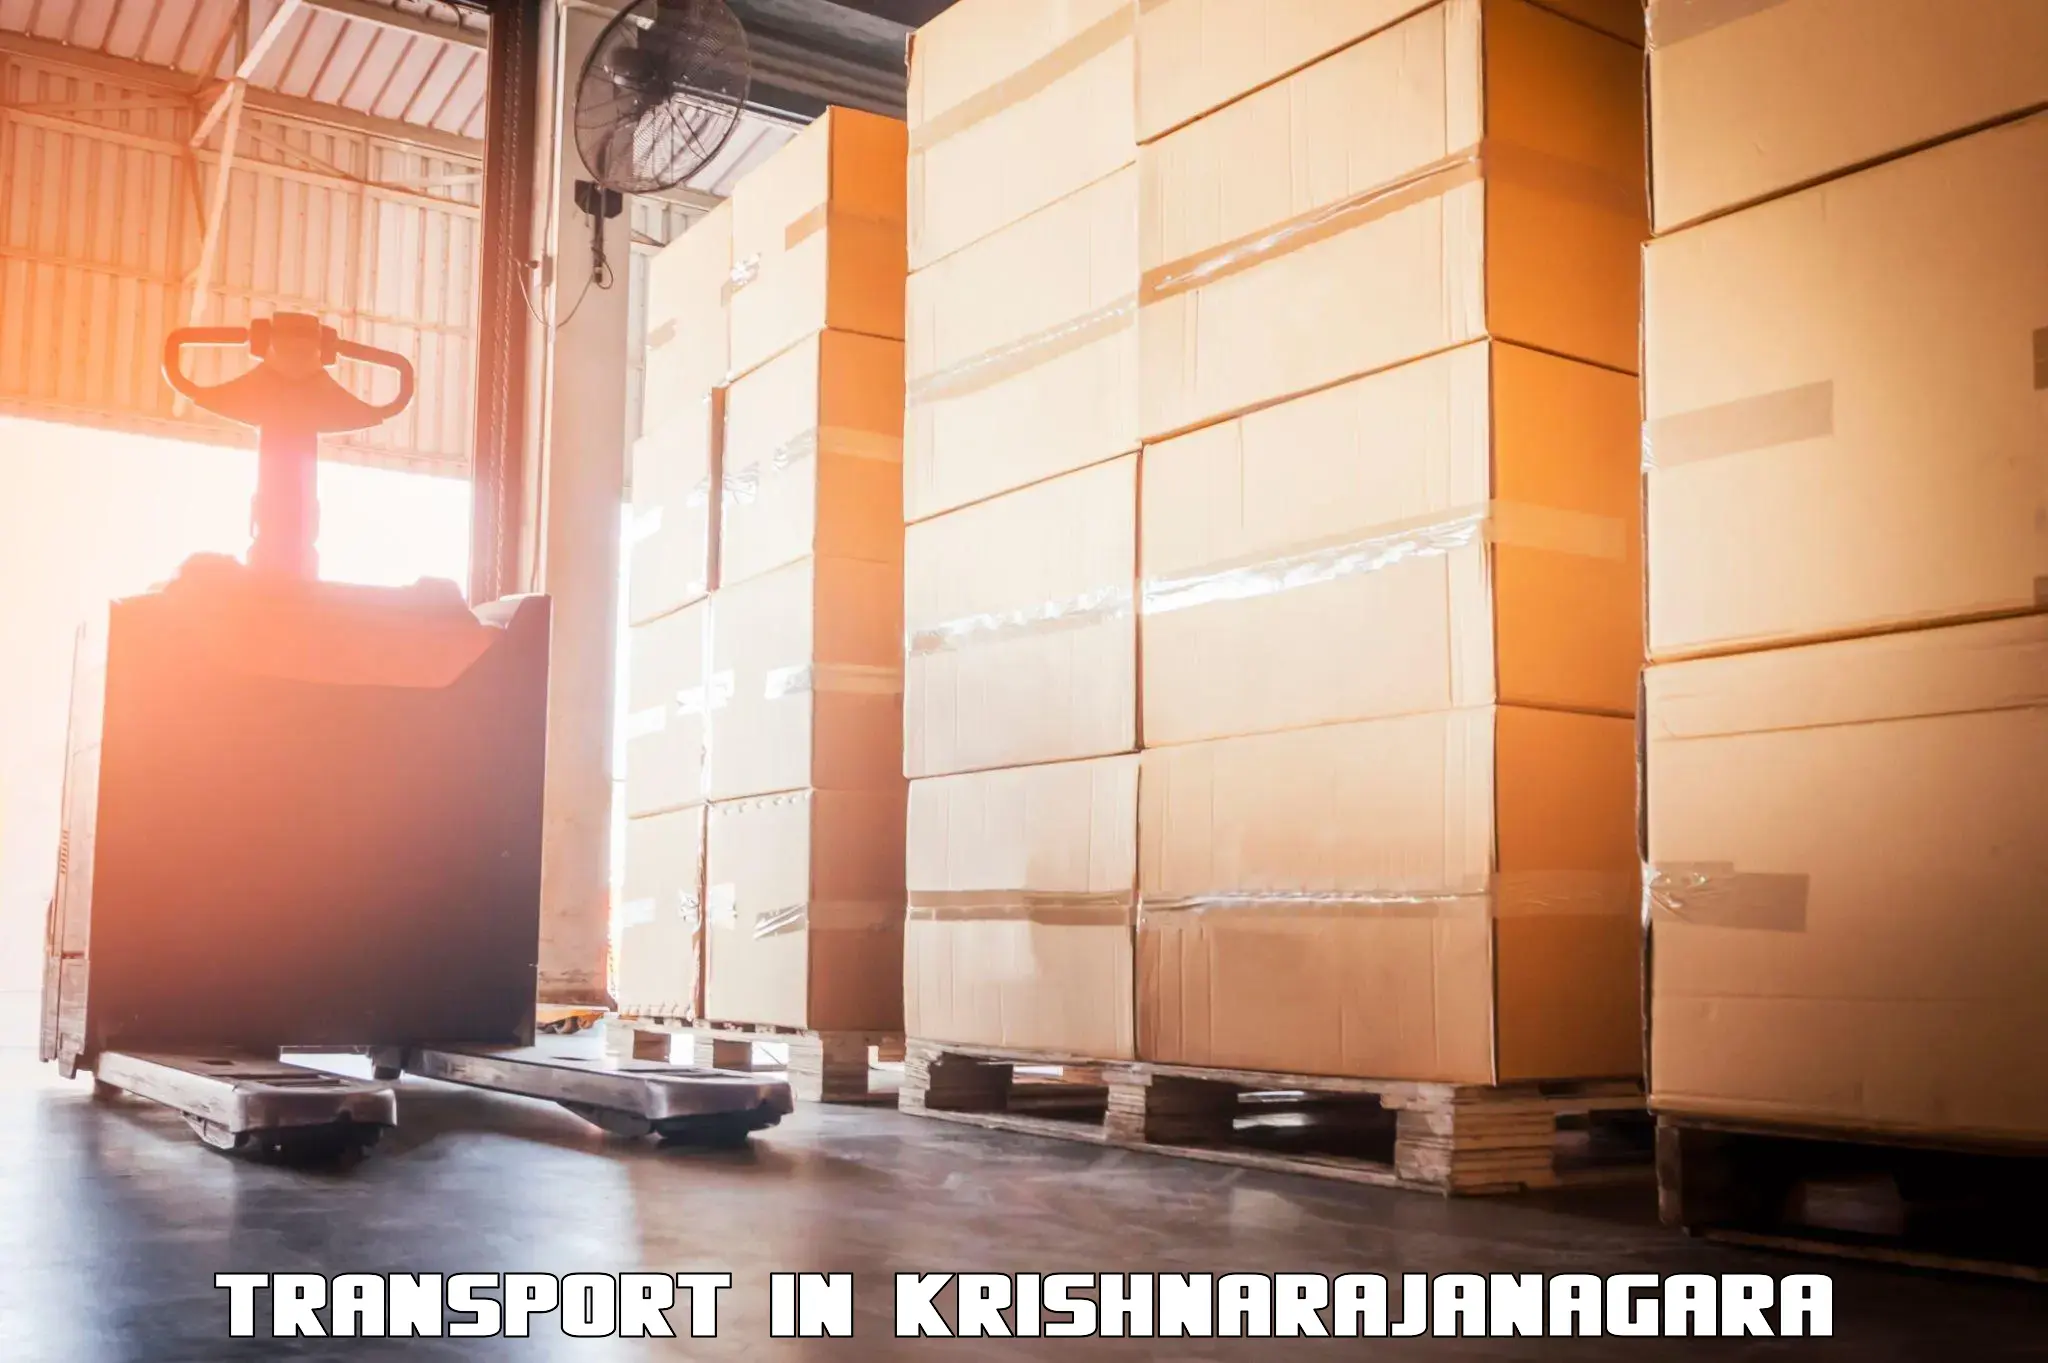 Transport in sharing in Krishnarajanagara